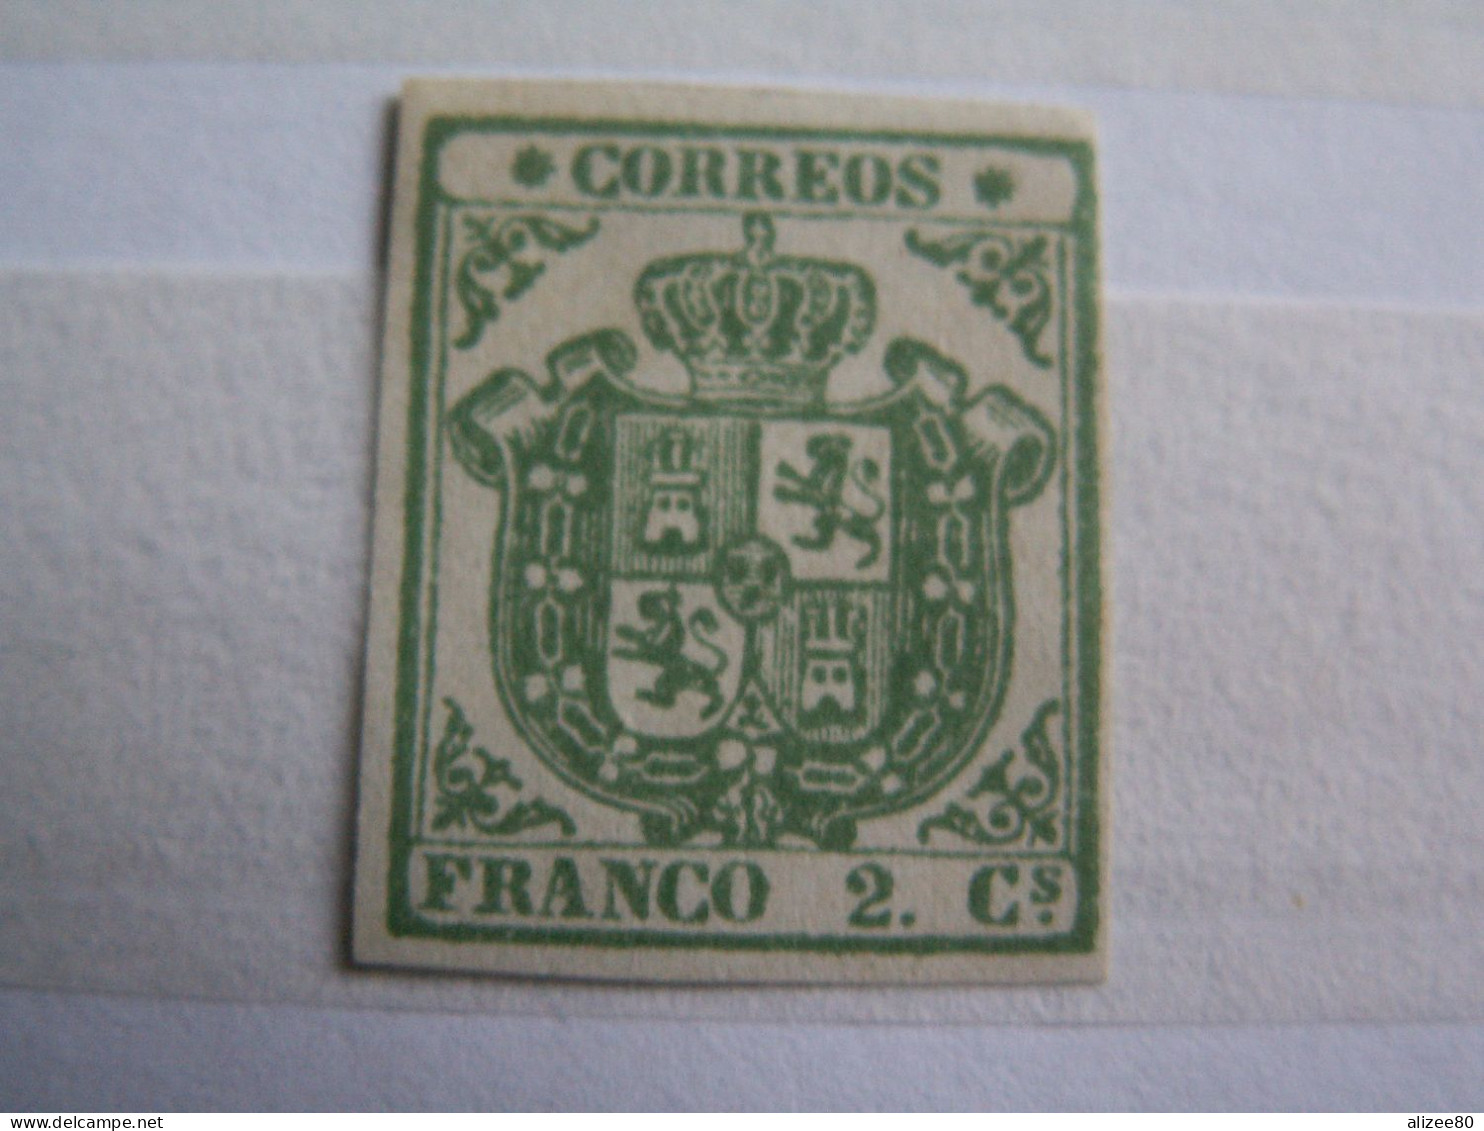 ROYAUME // ESPAGNE  --1854  5 C Vert Sur Fond Blanc - Papier Mince-  Marges Régulières - Sup  Cote 2200 Euro - Postfris – Scharnier